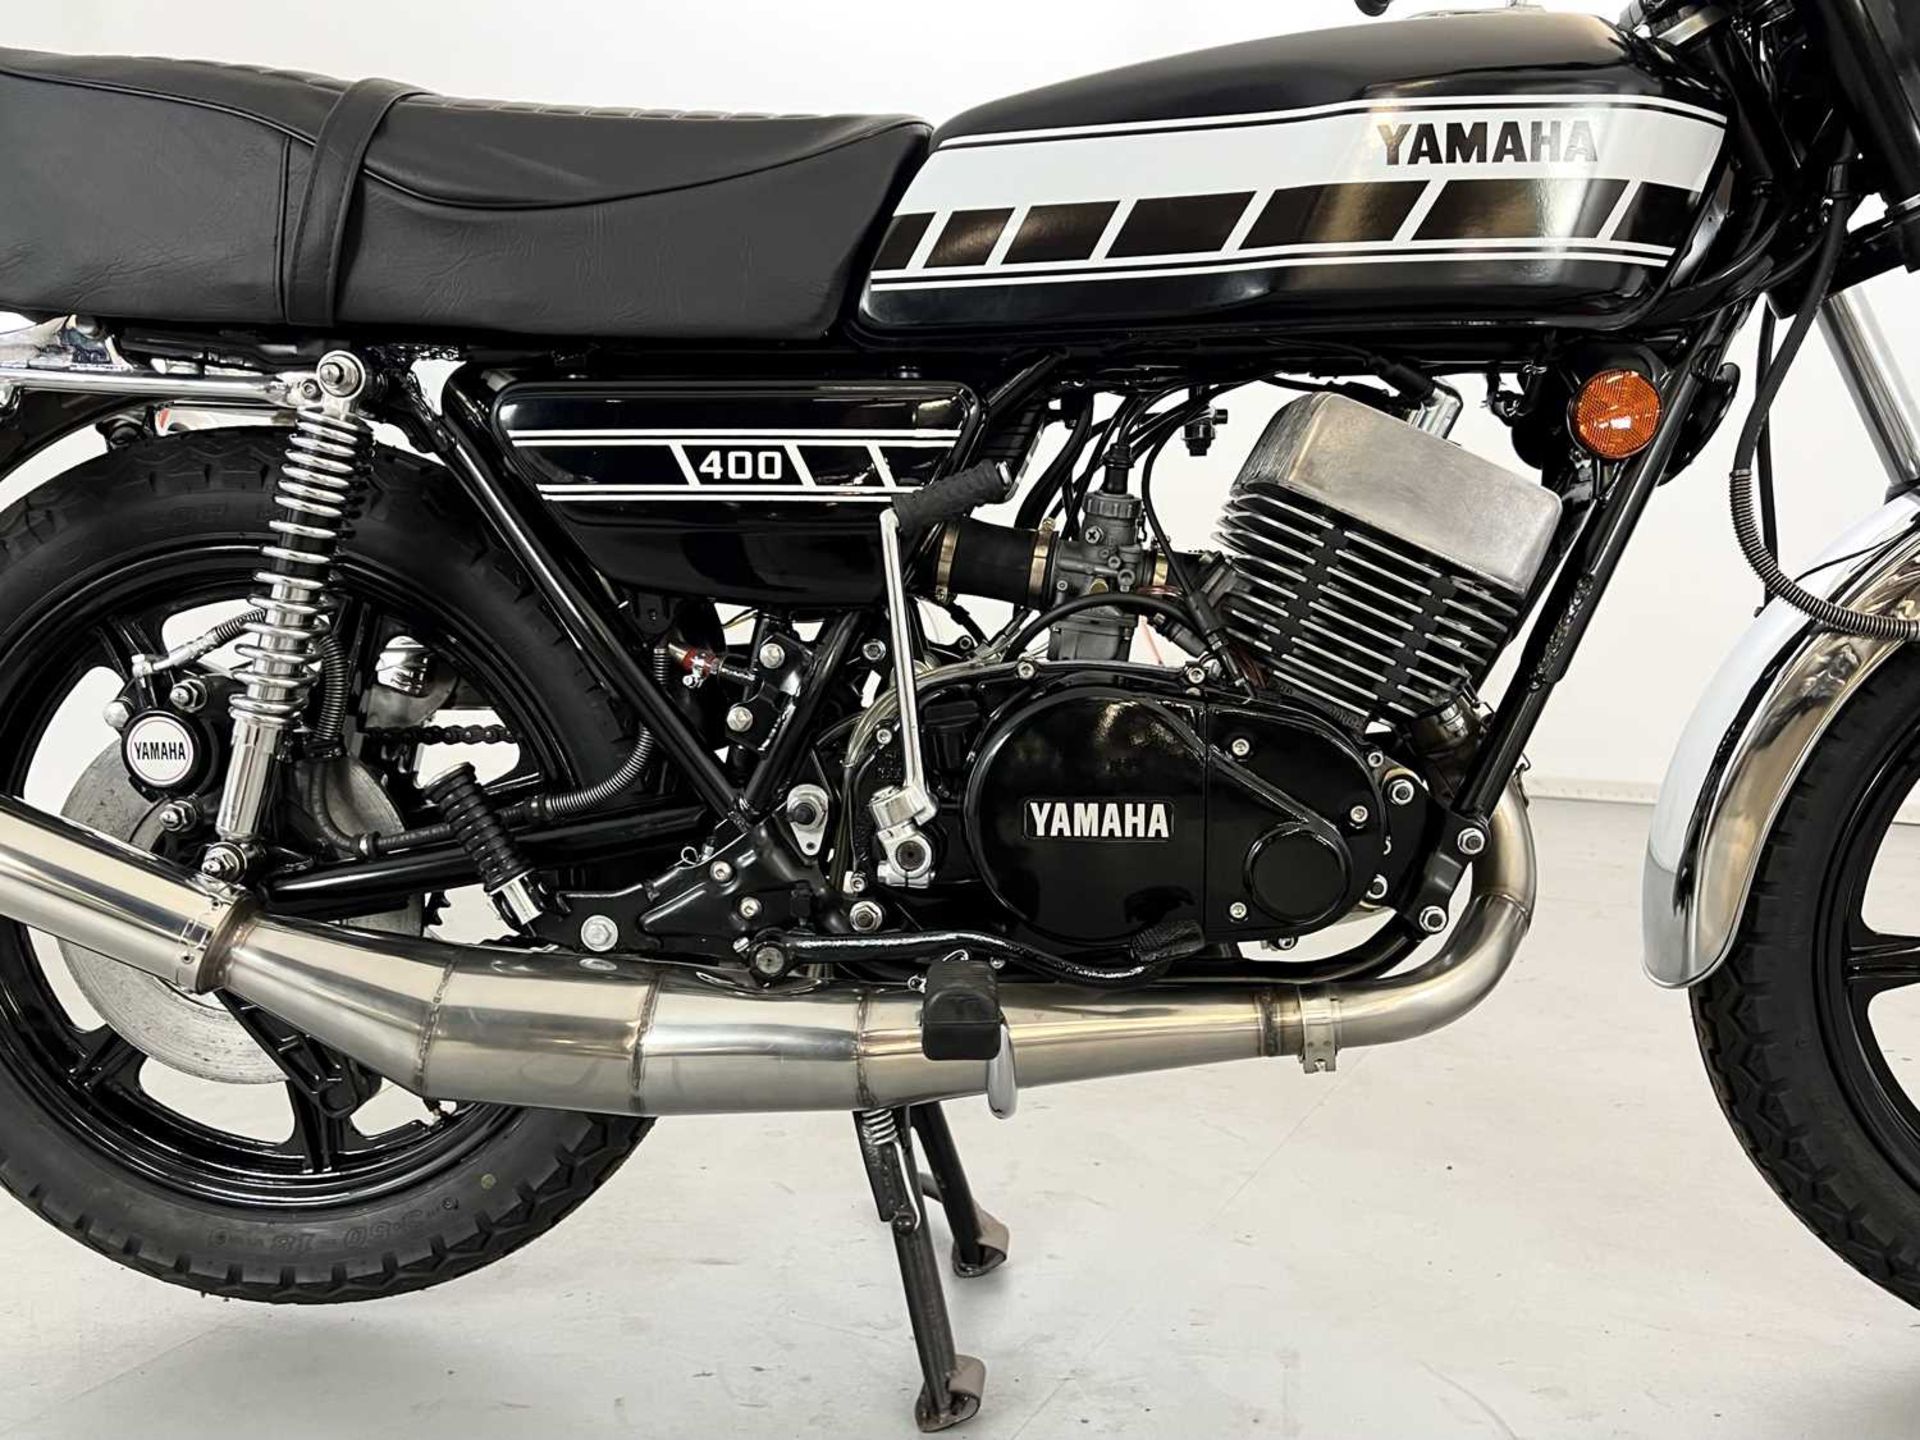 1977 Yamaha RD400 - Image 8 of 17